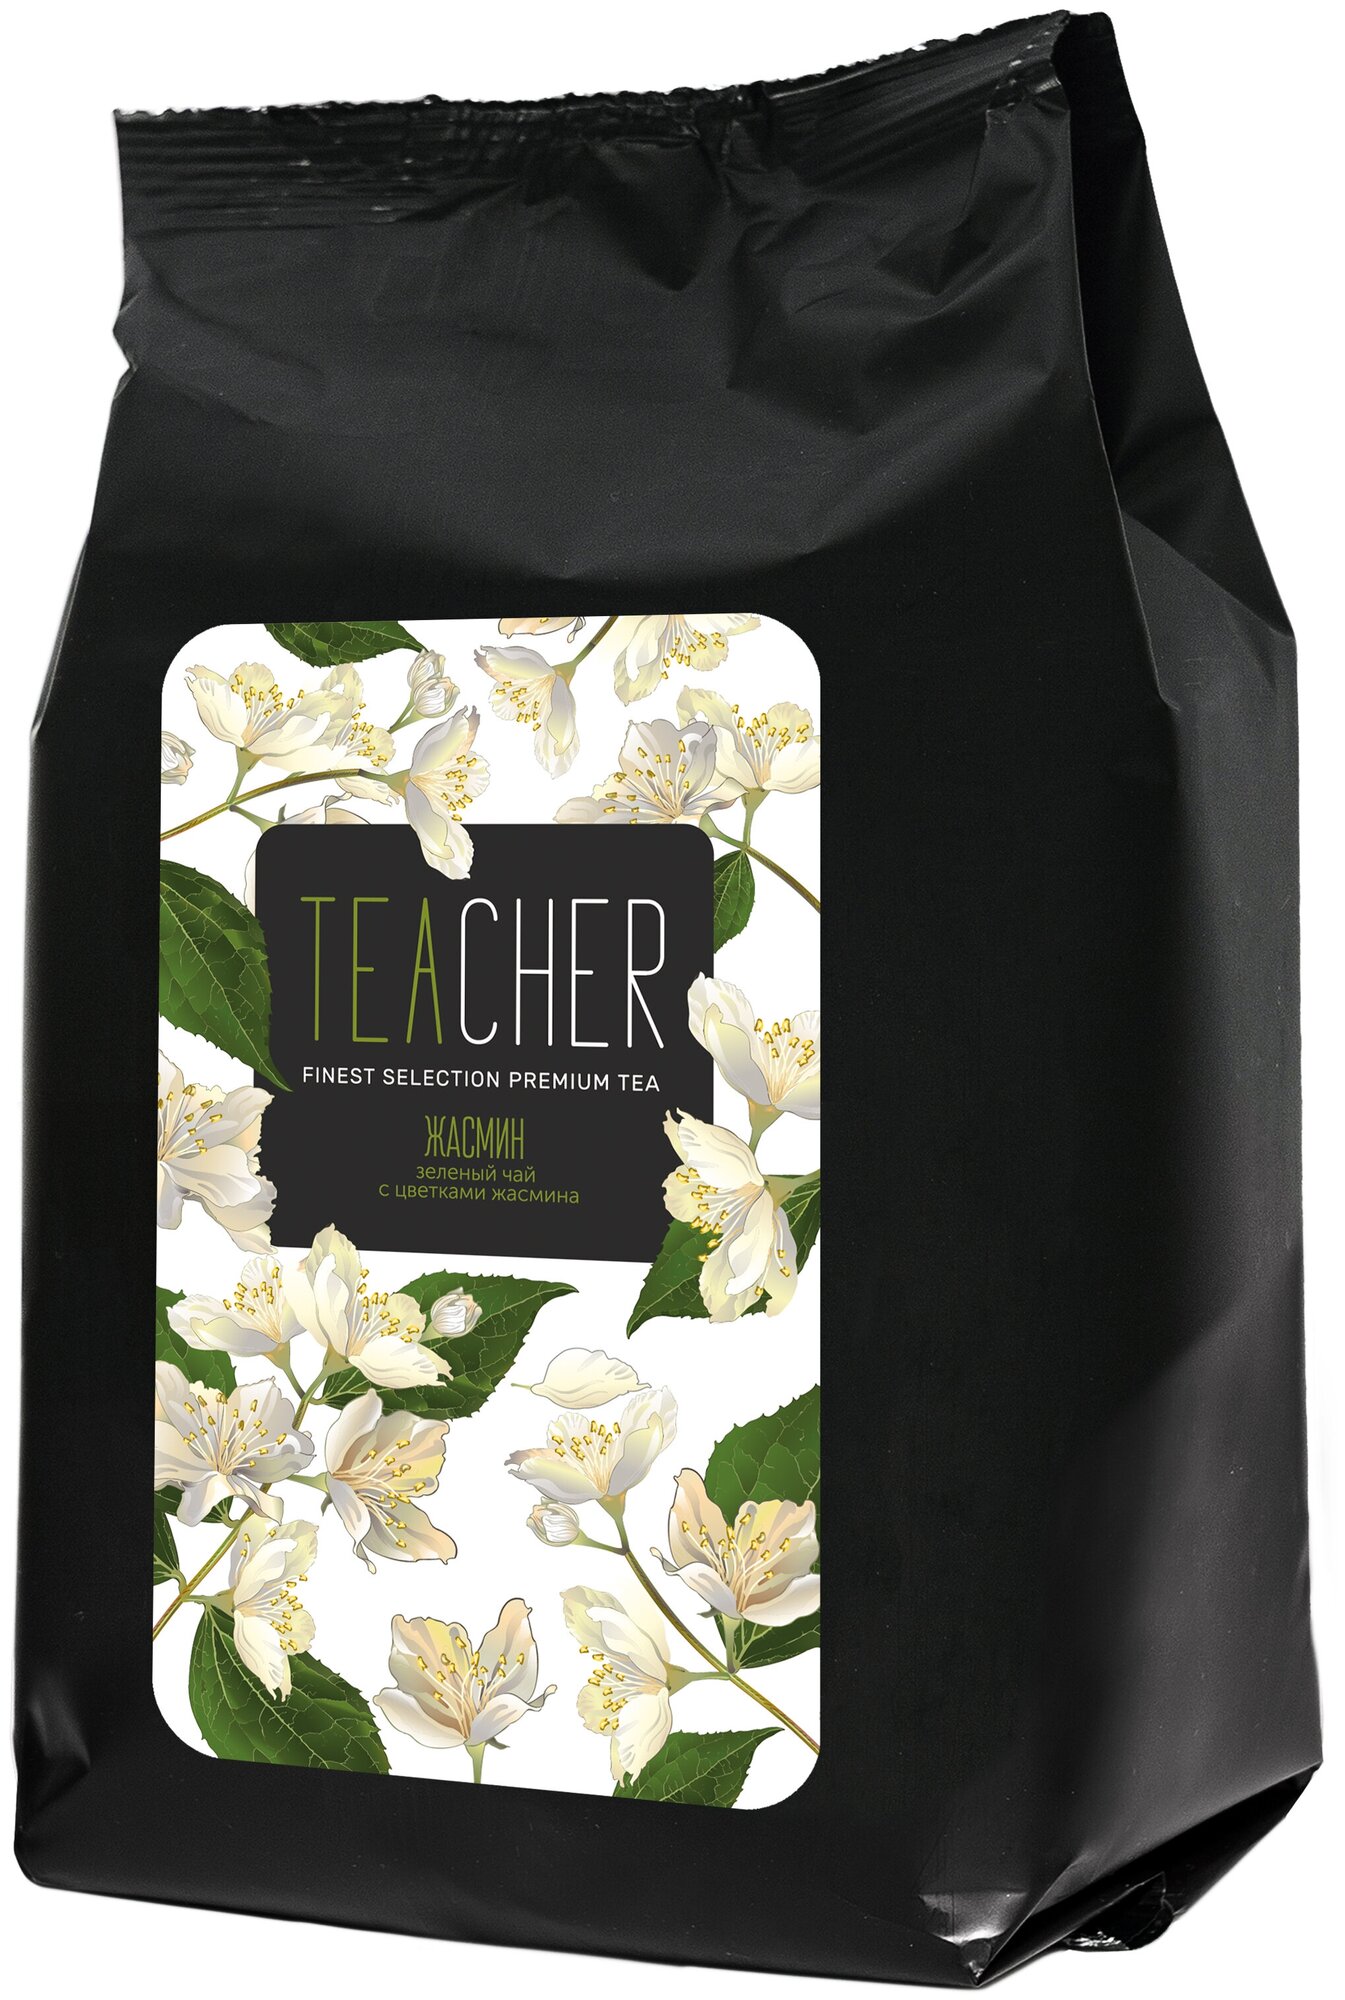 Чай TEACHER Жасмин 250 г зеленый листовой с бутонами цветками жасмина травяной премиум рассыпной весовой - фотография № 5